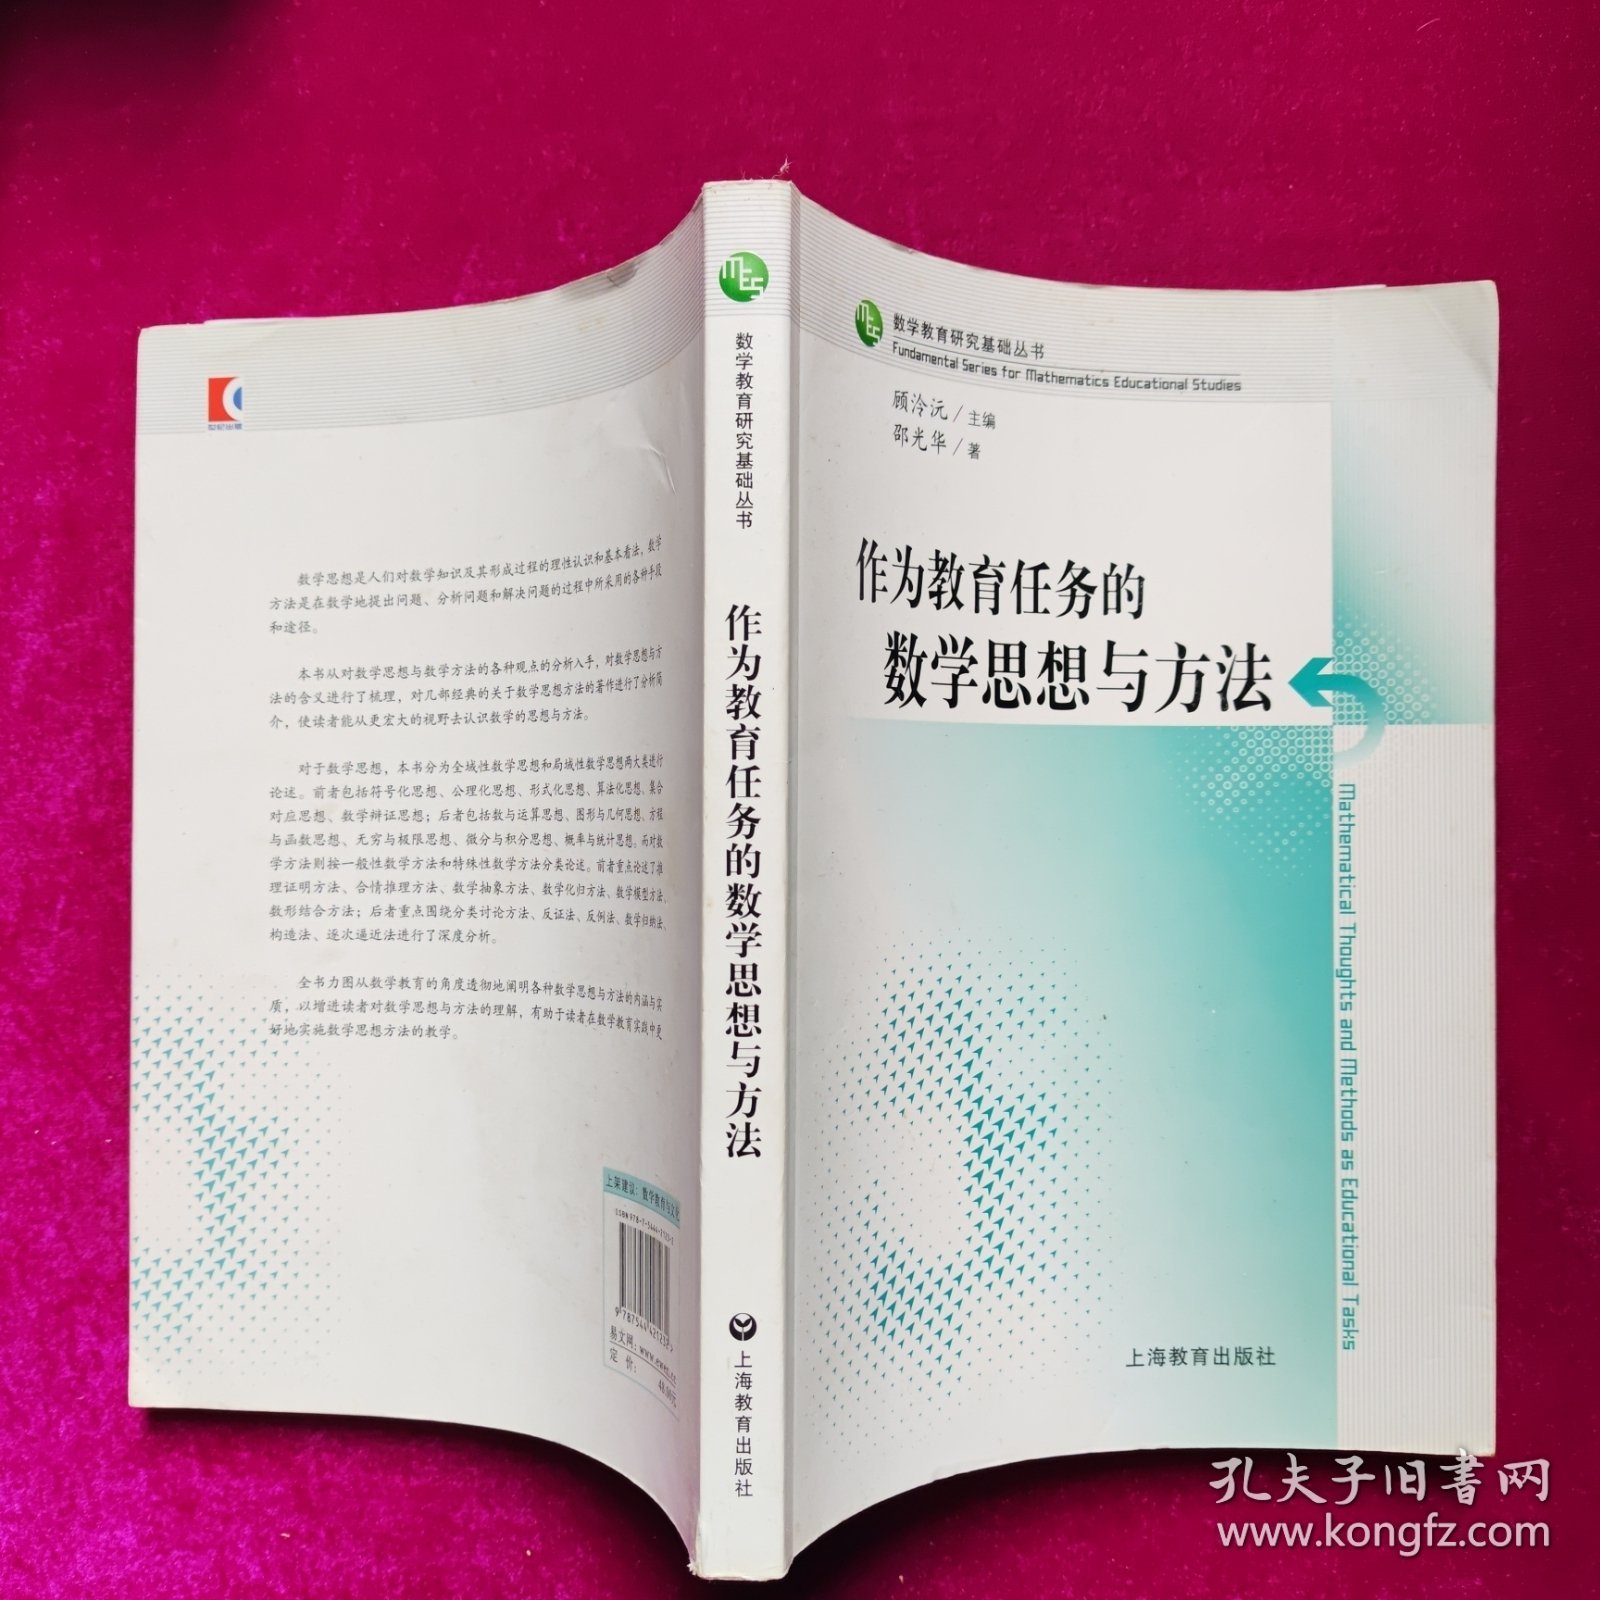 作为教育任务的数学思想与方法 邵光华著 上海教育出版社